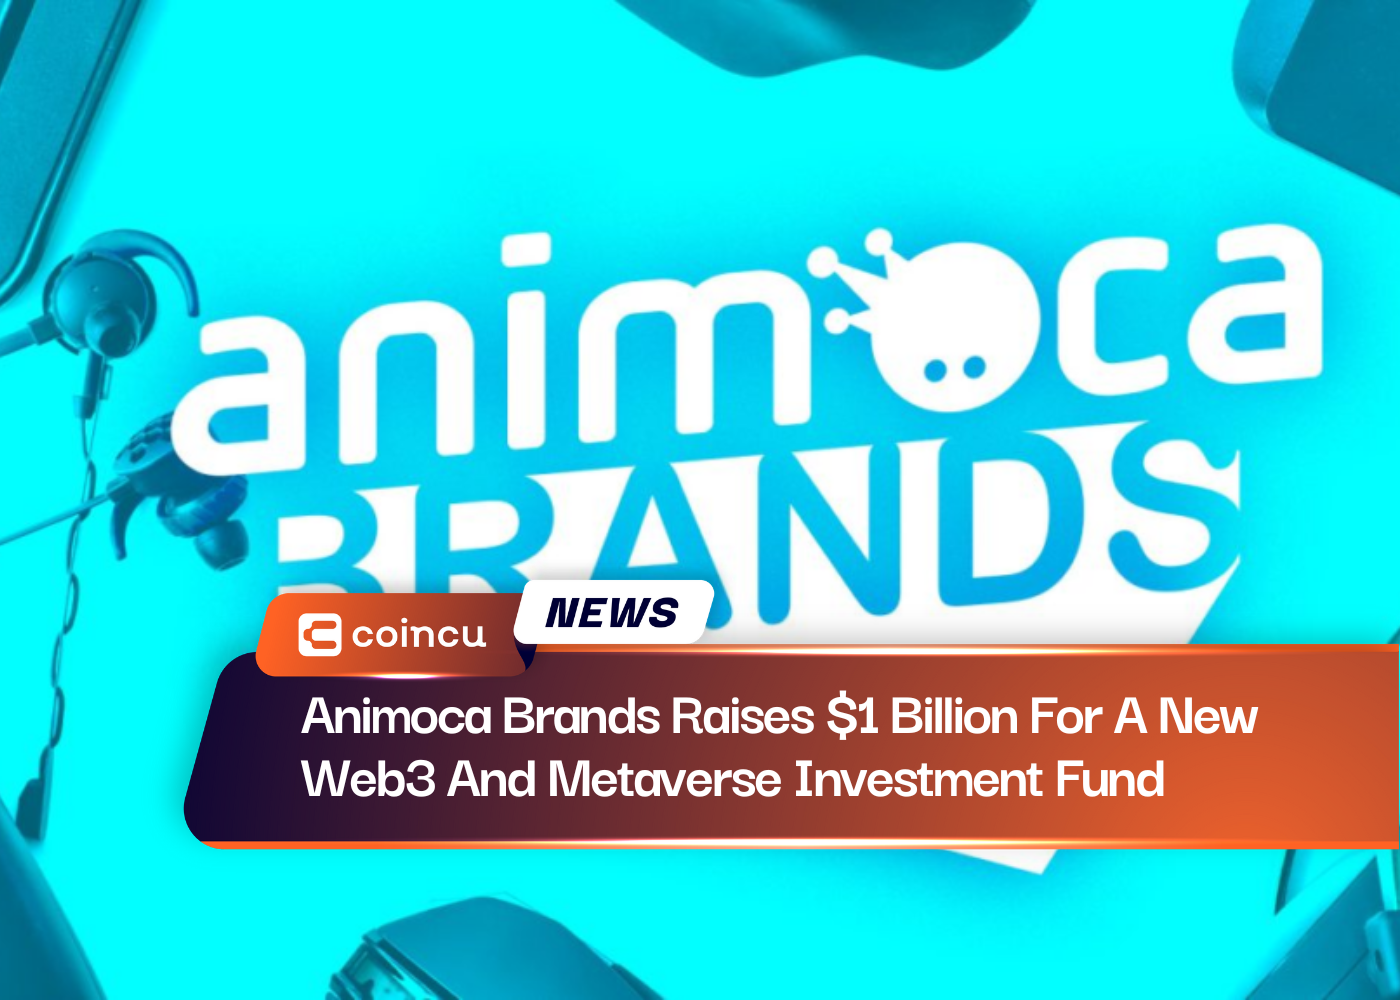 Thương hiệu Animoca huy động được 1 tỷ USD cho quỹ đầu tư Web3 và Metaverse mới